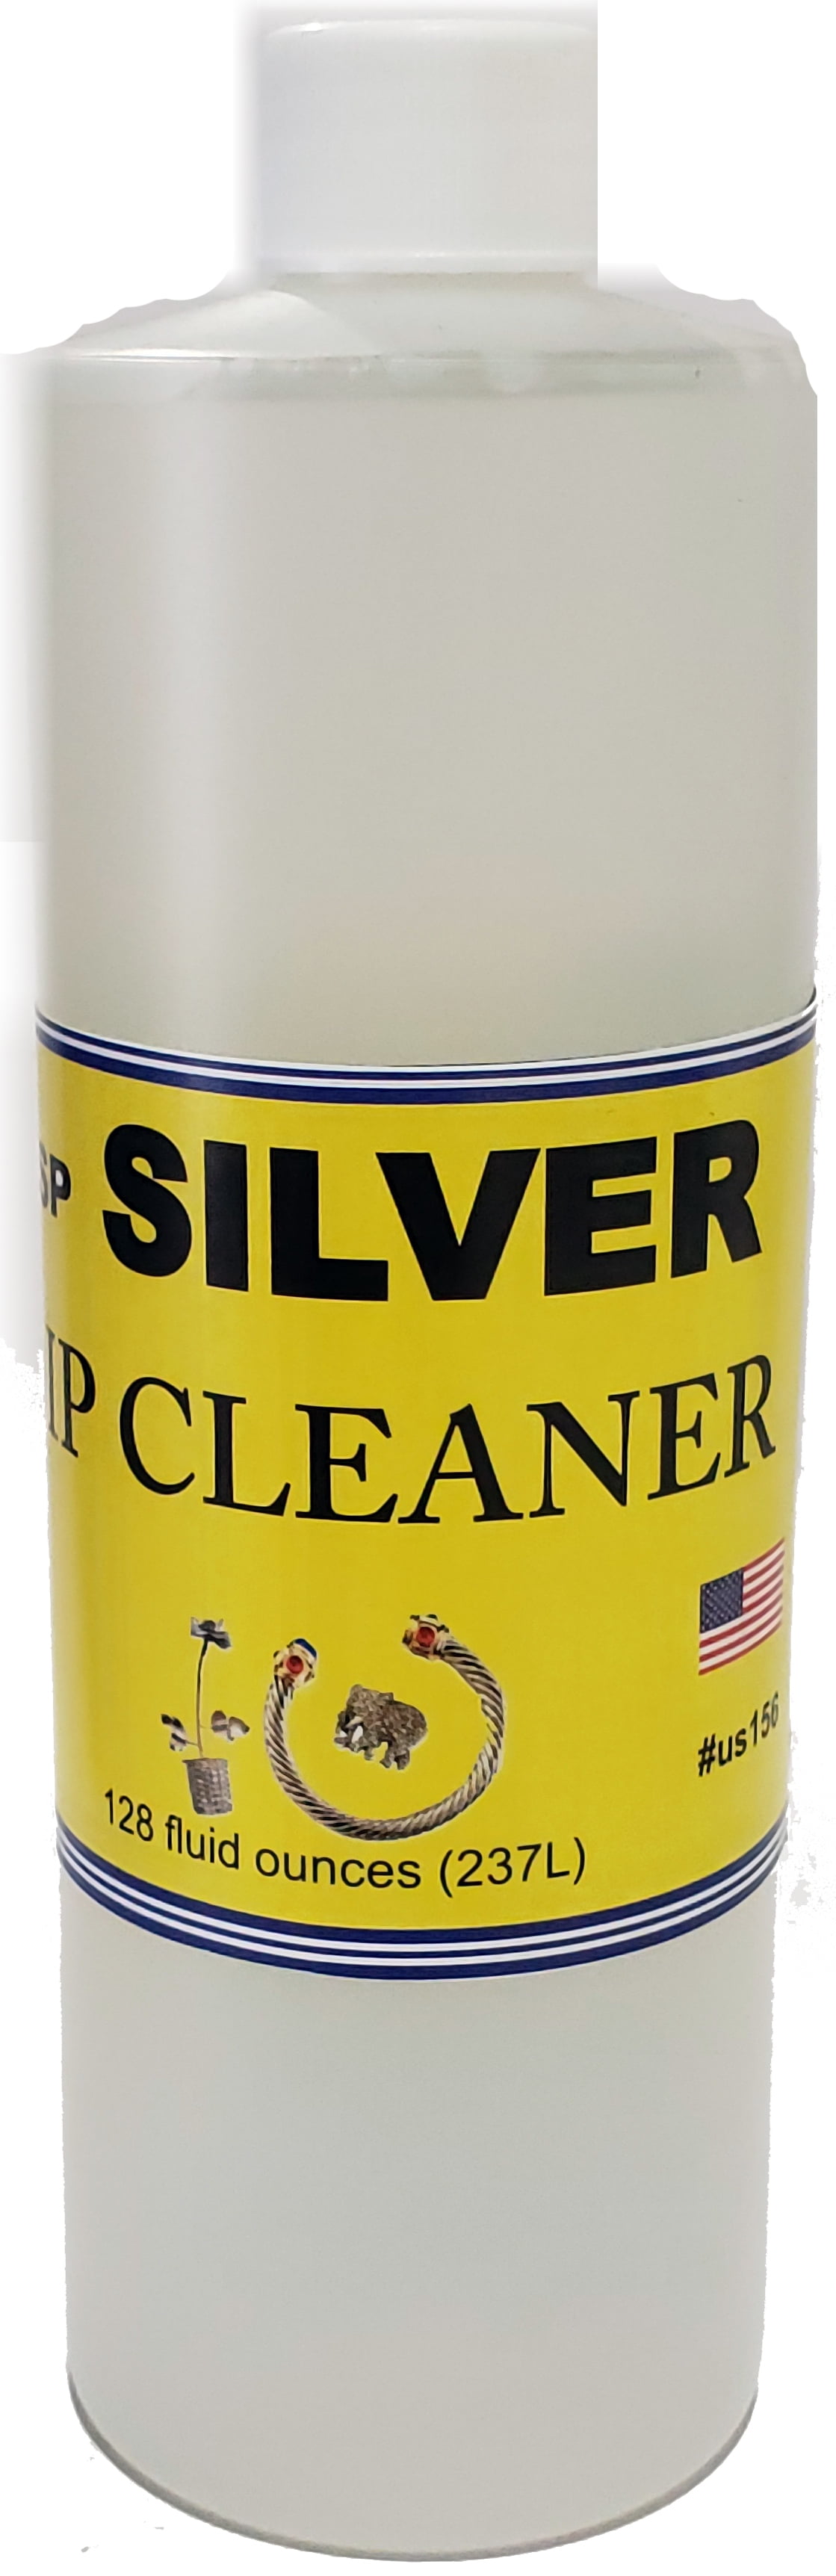 JSP Silver Dip Cleaner